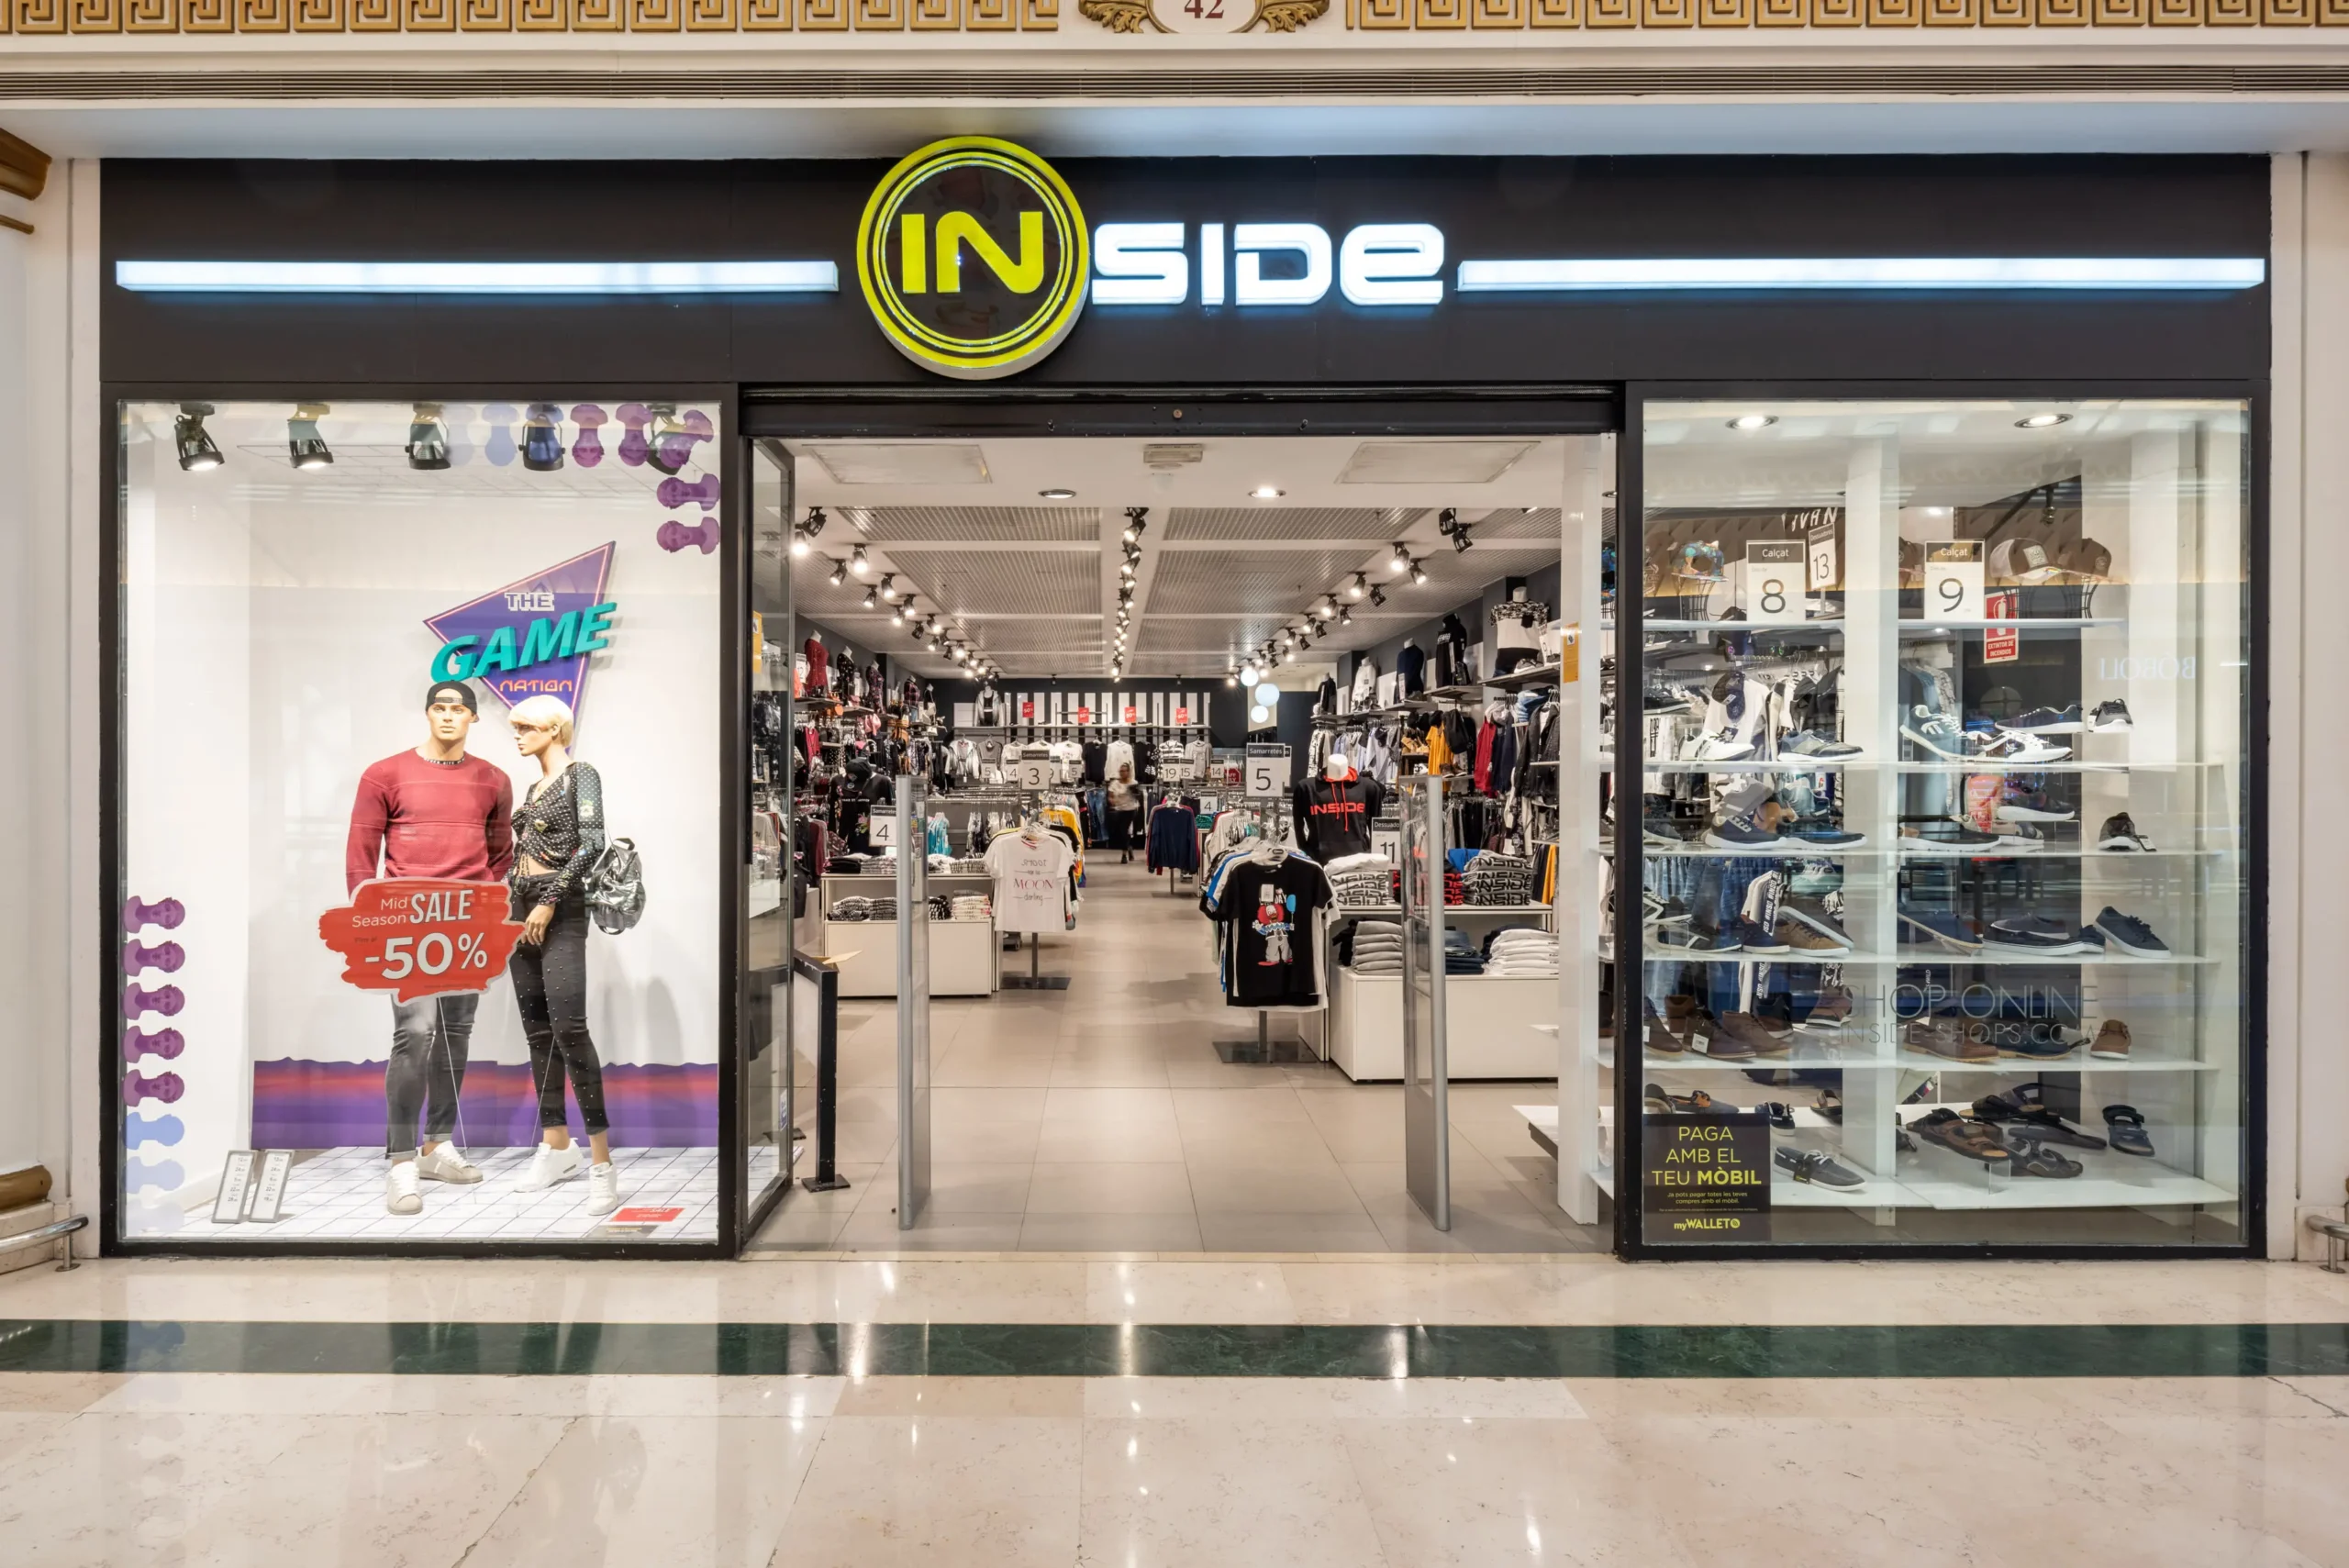 inside ropa españa - Qué marca es inside